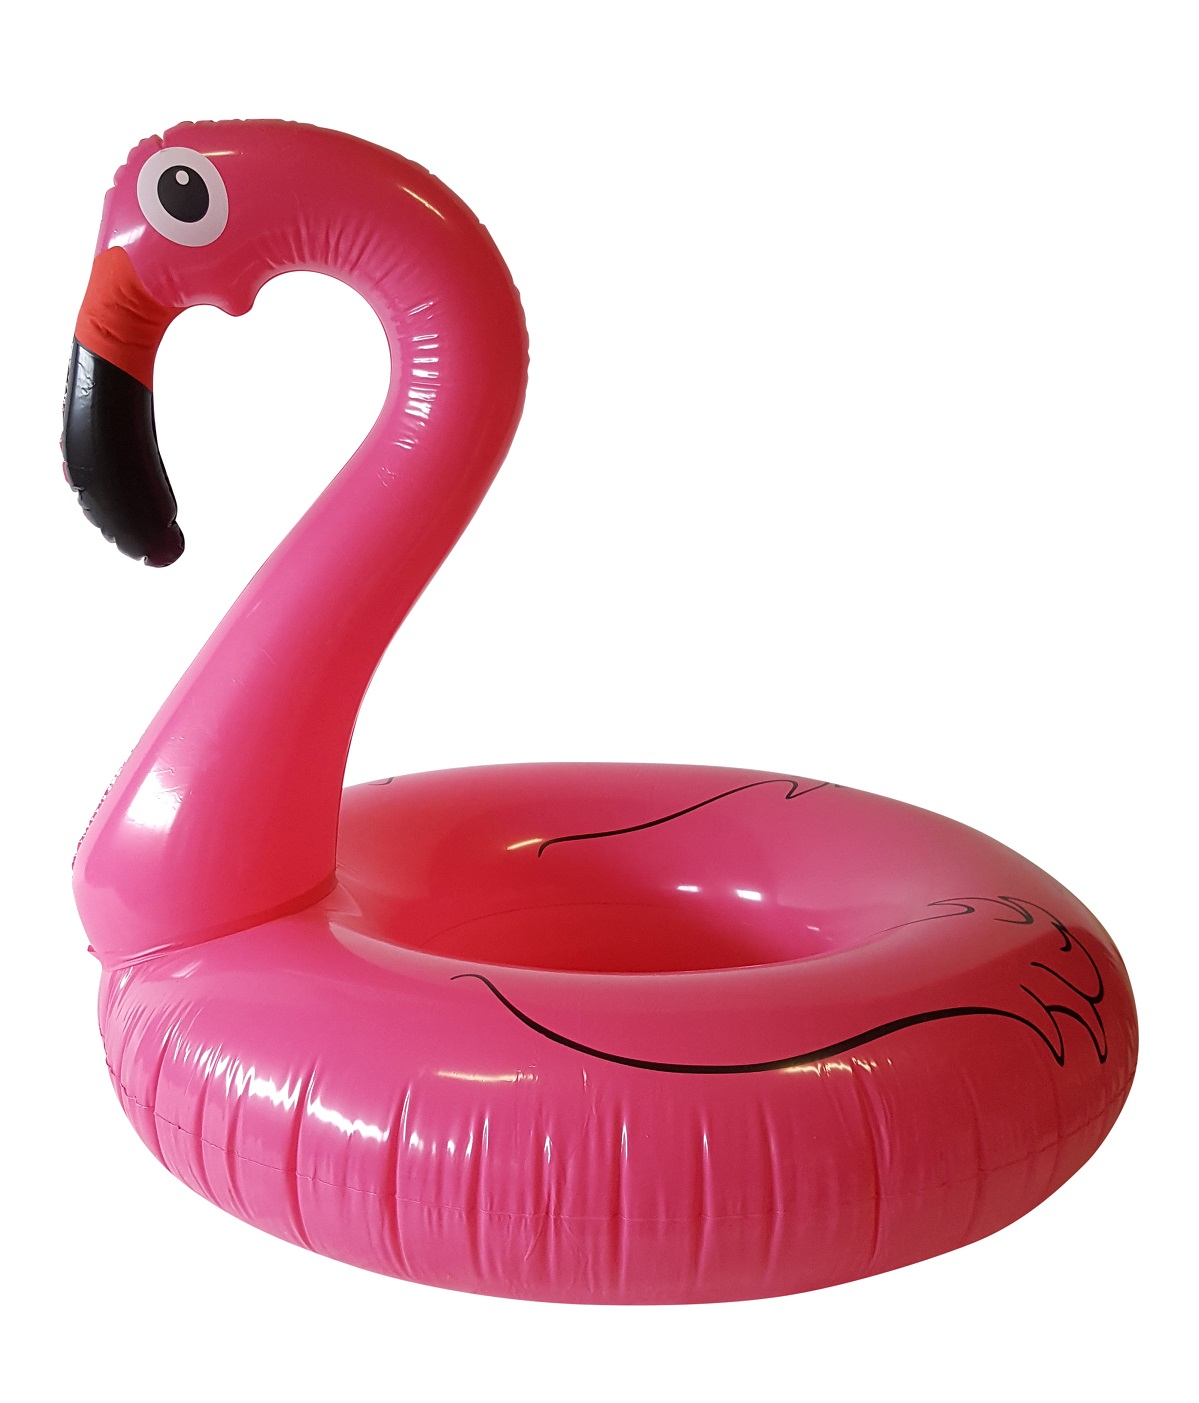 Verscherpen materiaal Continent Grote Opblaasbare Flamingo kopen? Natuurlijk bij Kunstpalm.nl